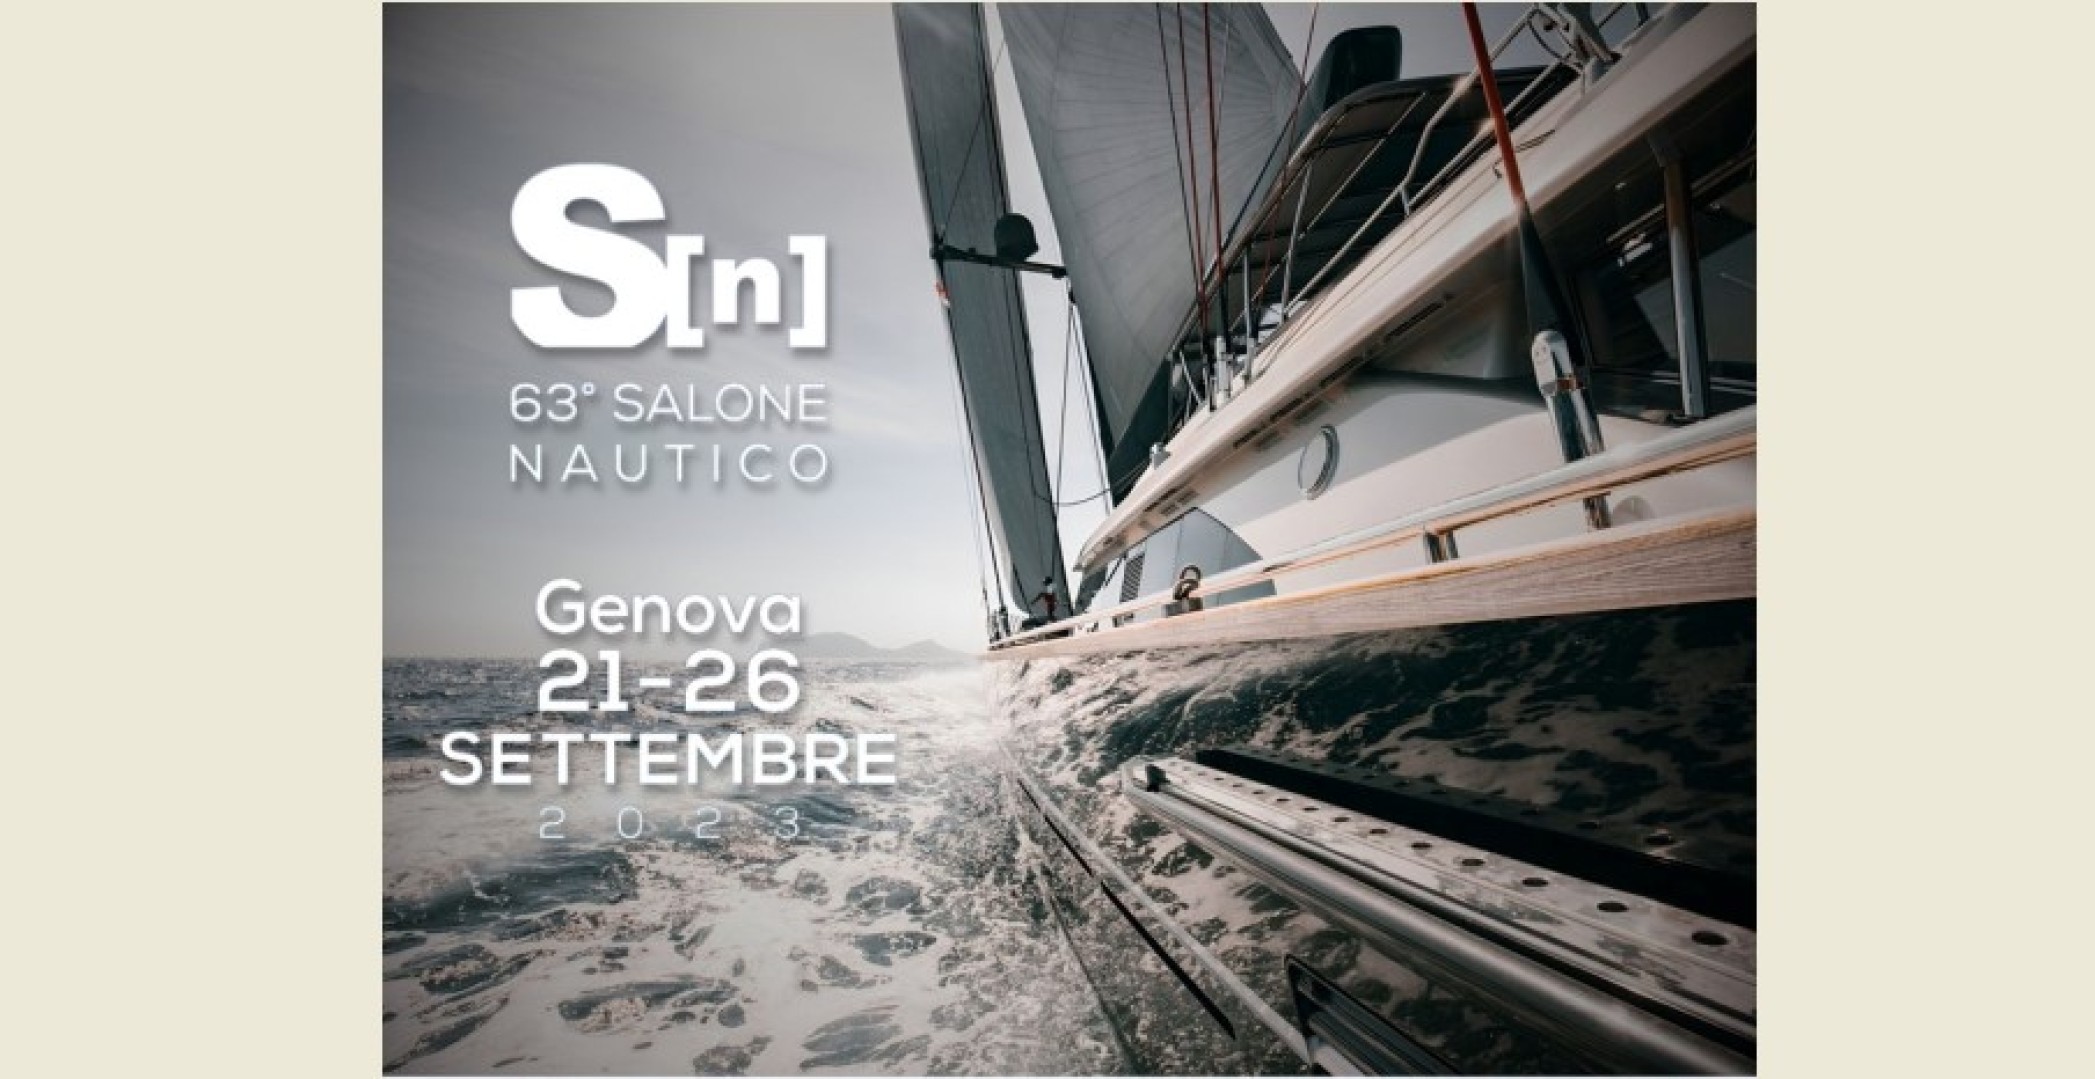 Yacht Specialist sarà al Salone Nautico di Genova